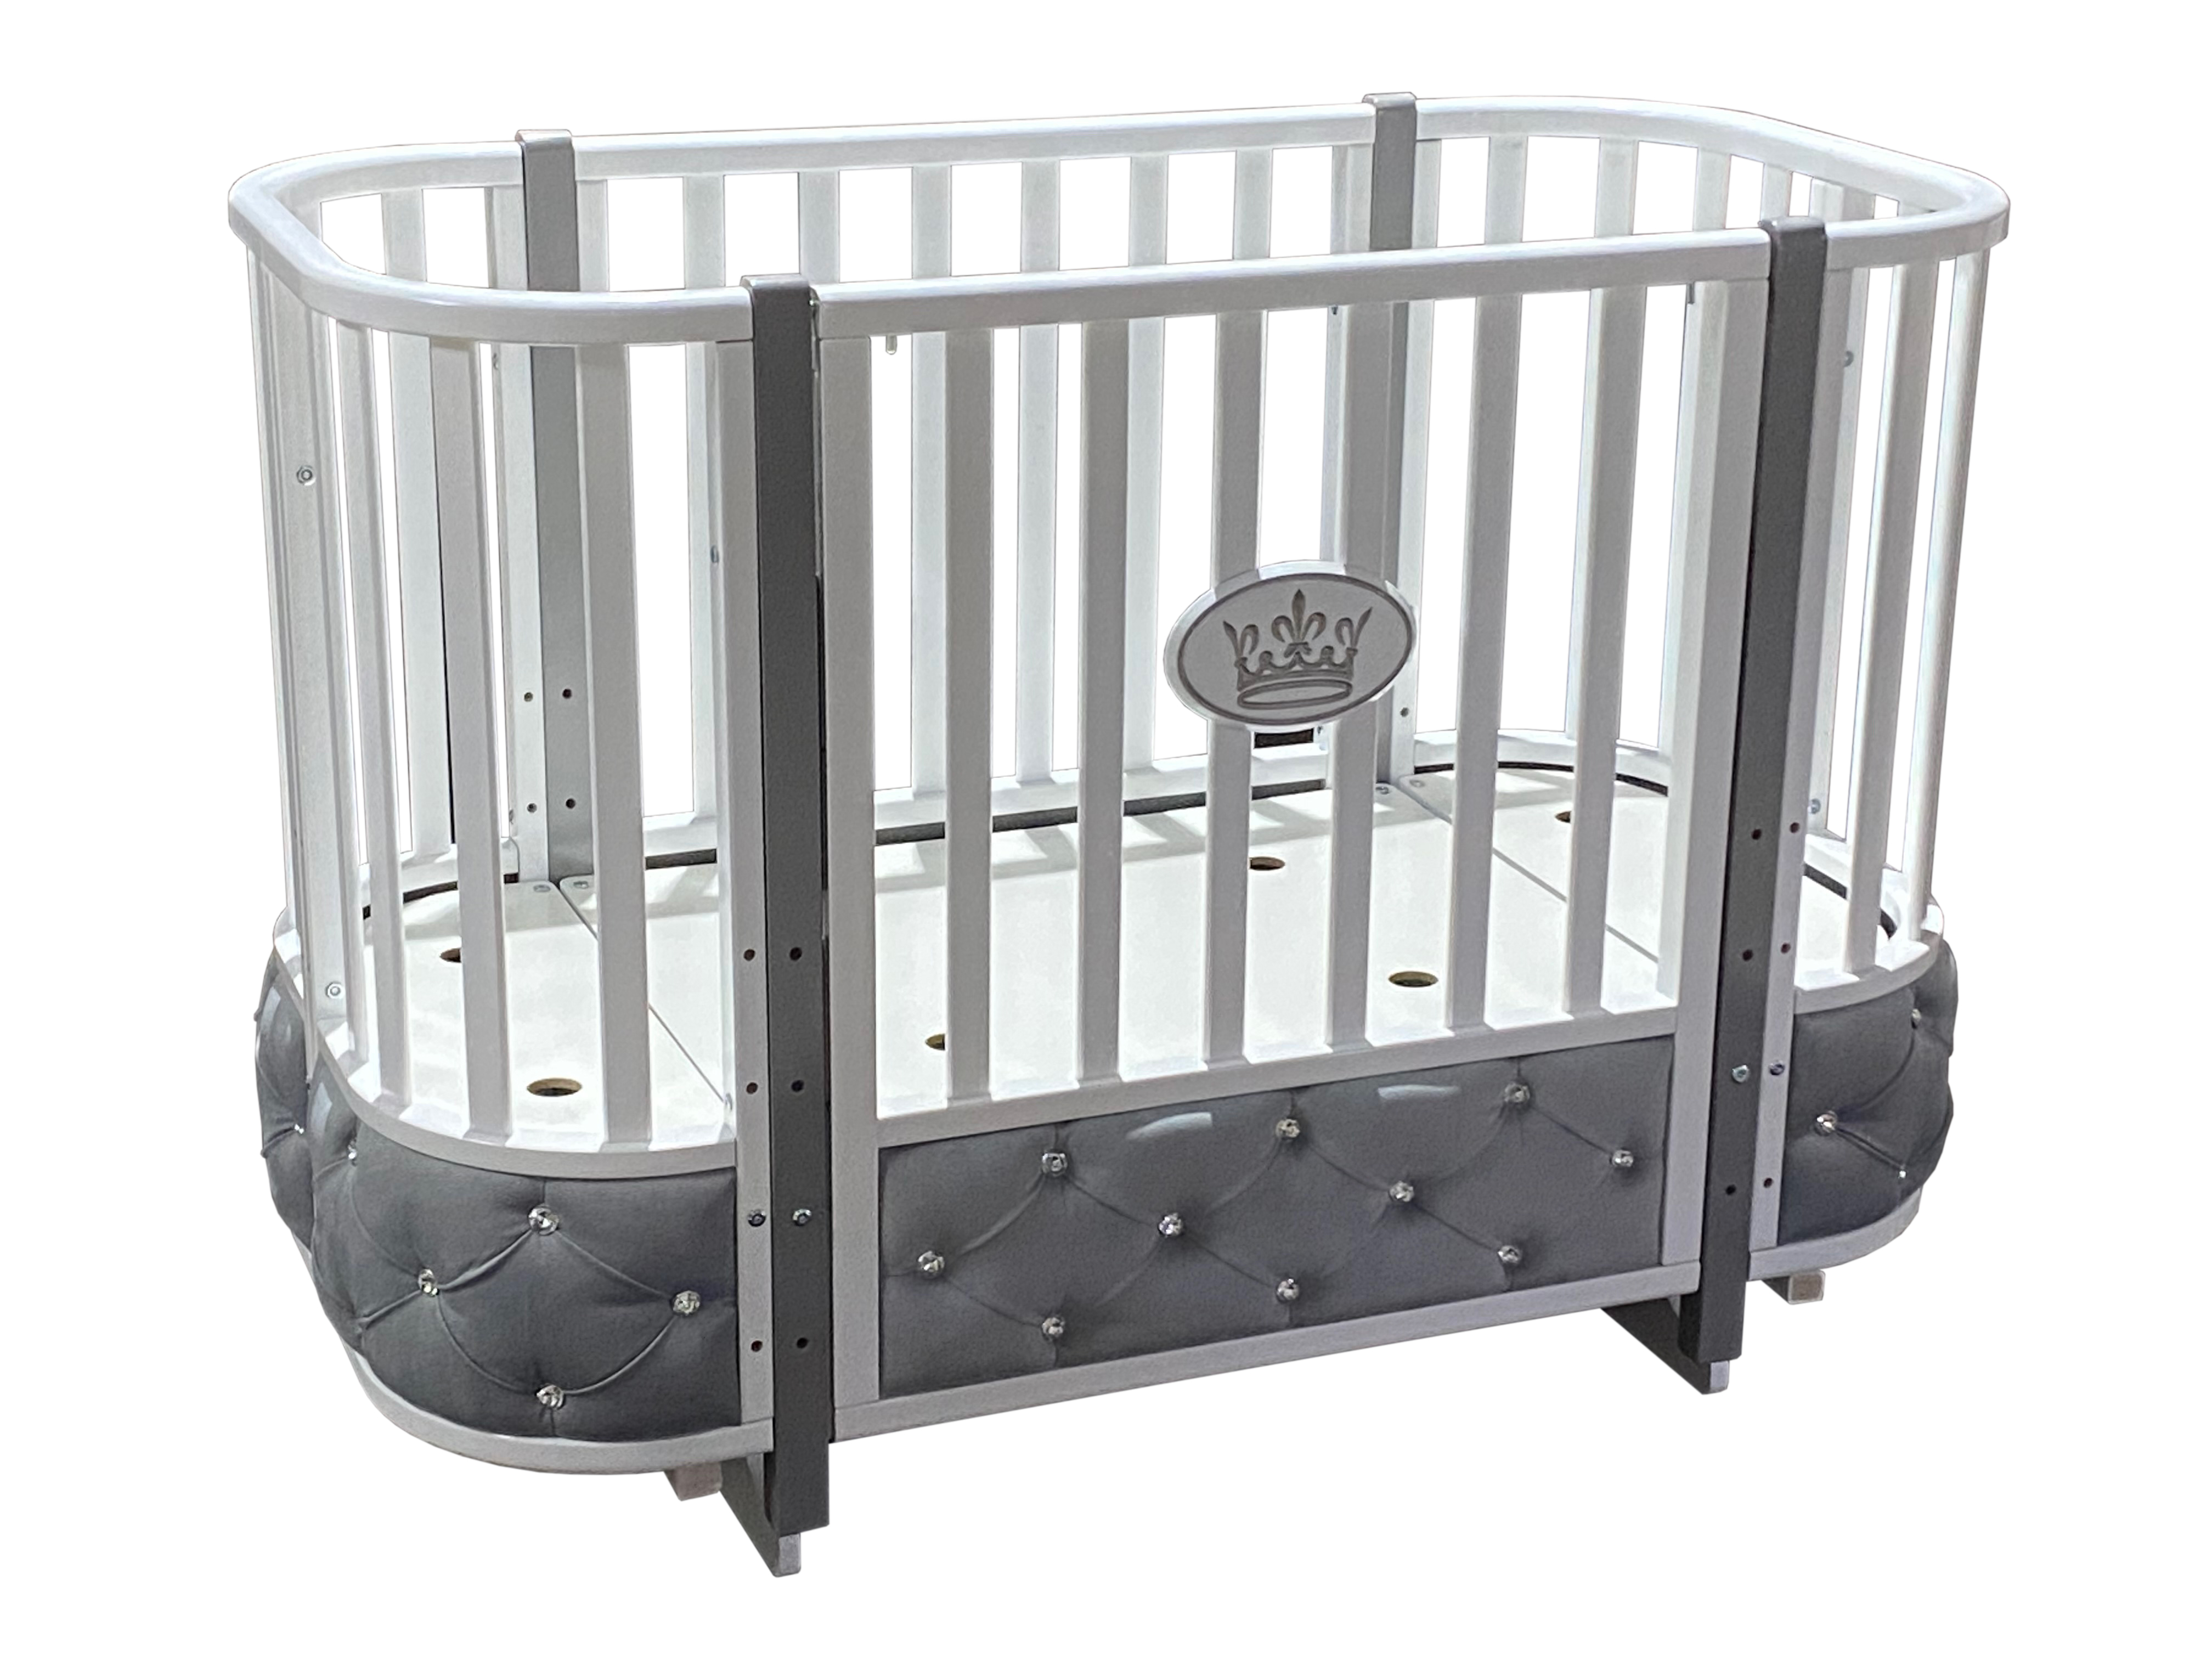 Кровать детская Есения 2 с мягкой вставкой из велюра, опускающаяся стенка, поперечный маятник + колеса.